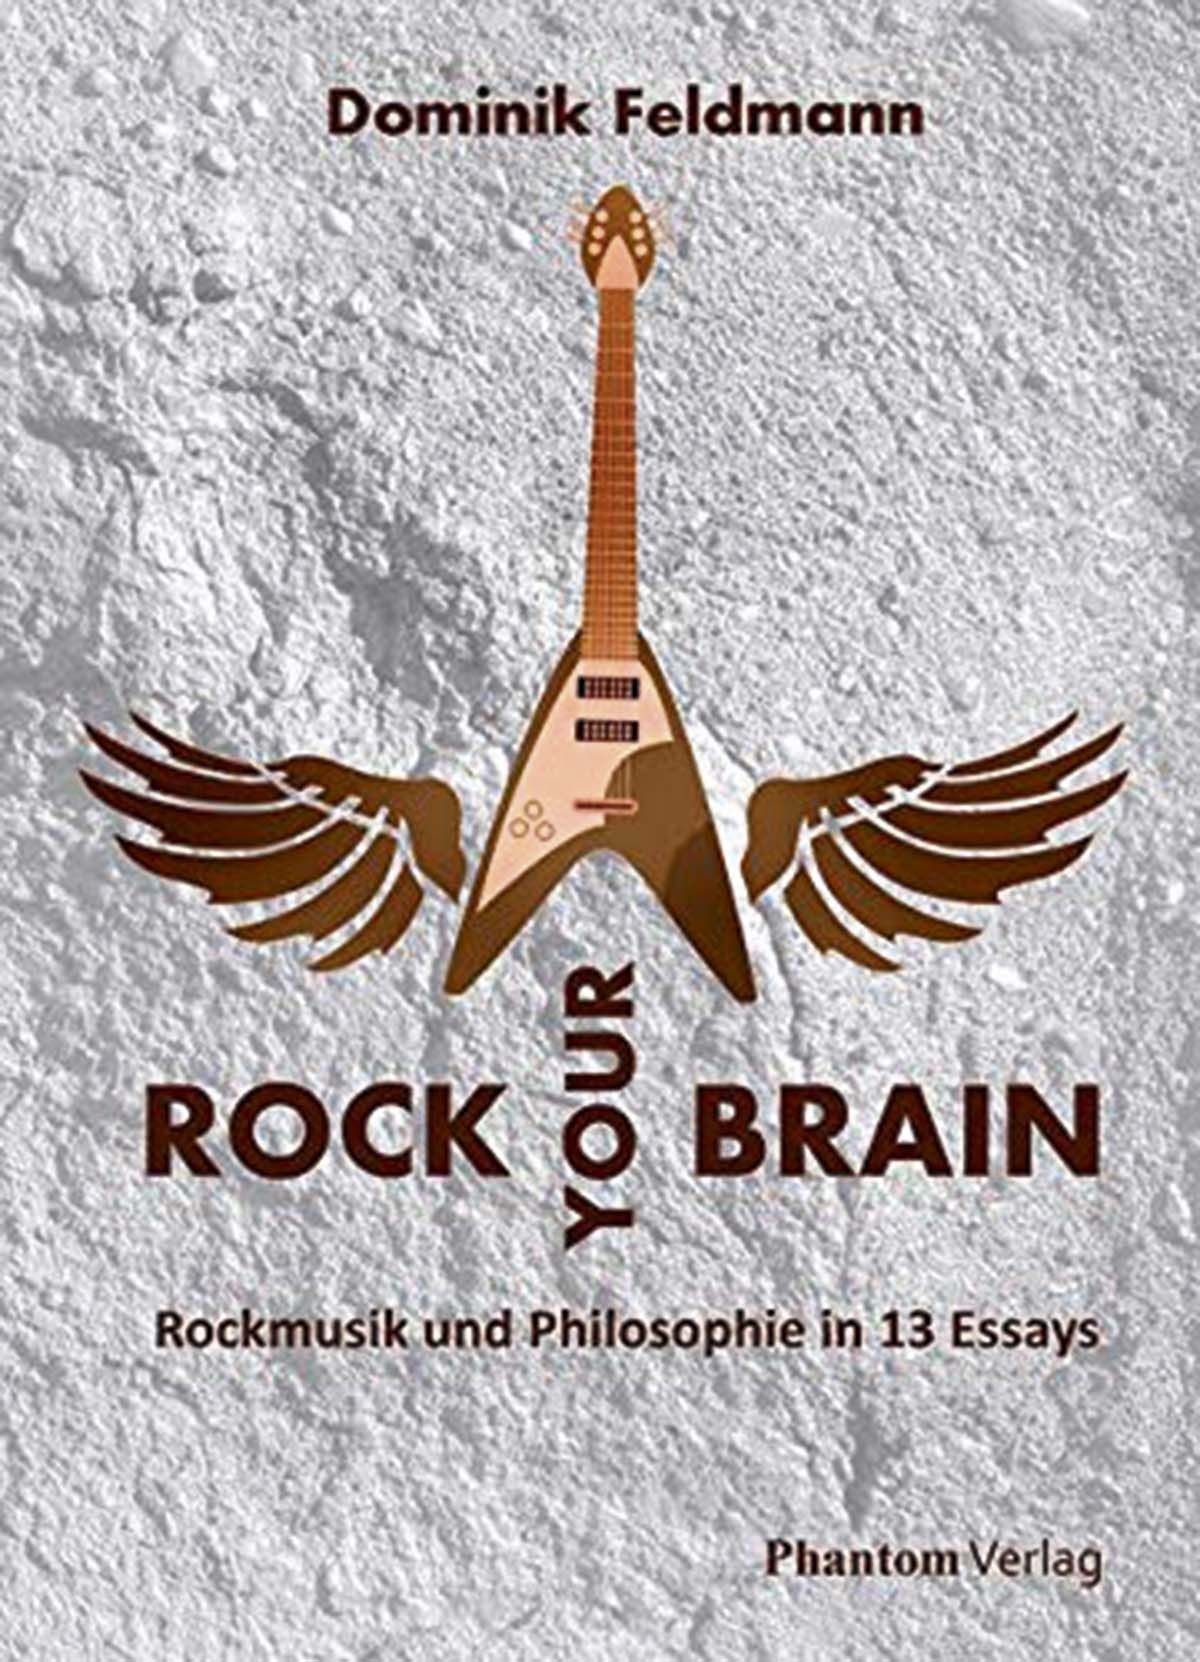 Rock Your Brain – Rockmusik und Philosophie in 13 Essays